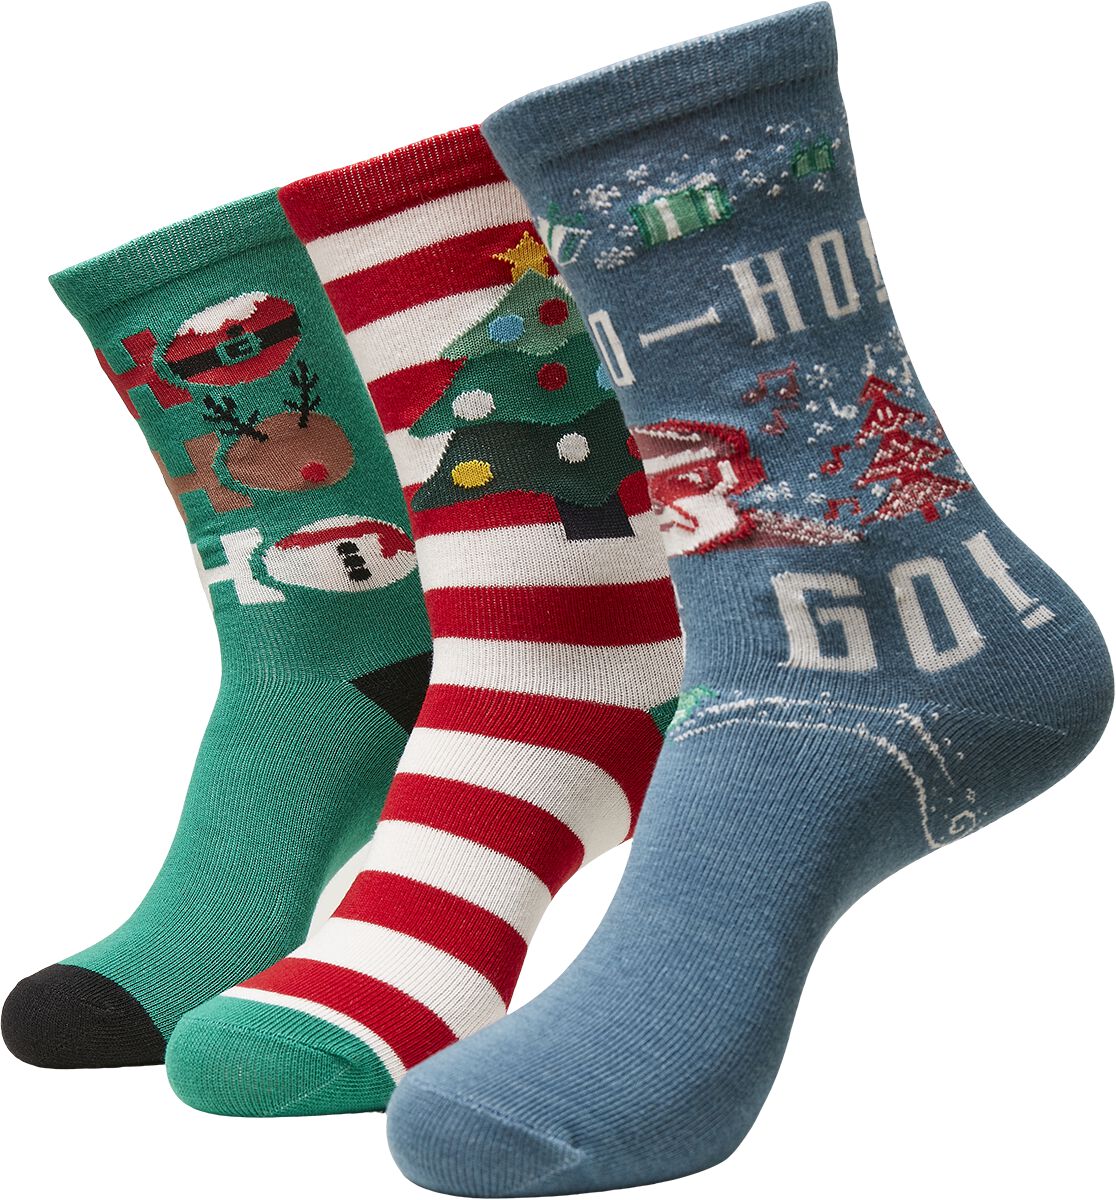 Image of Urban Classics Ho Ho Ho Christmas Socks 3-Pack Socken multicolor